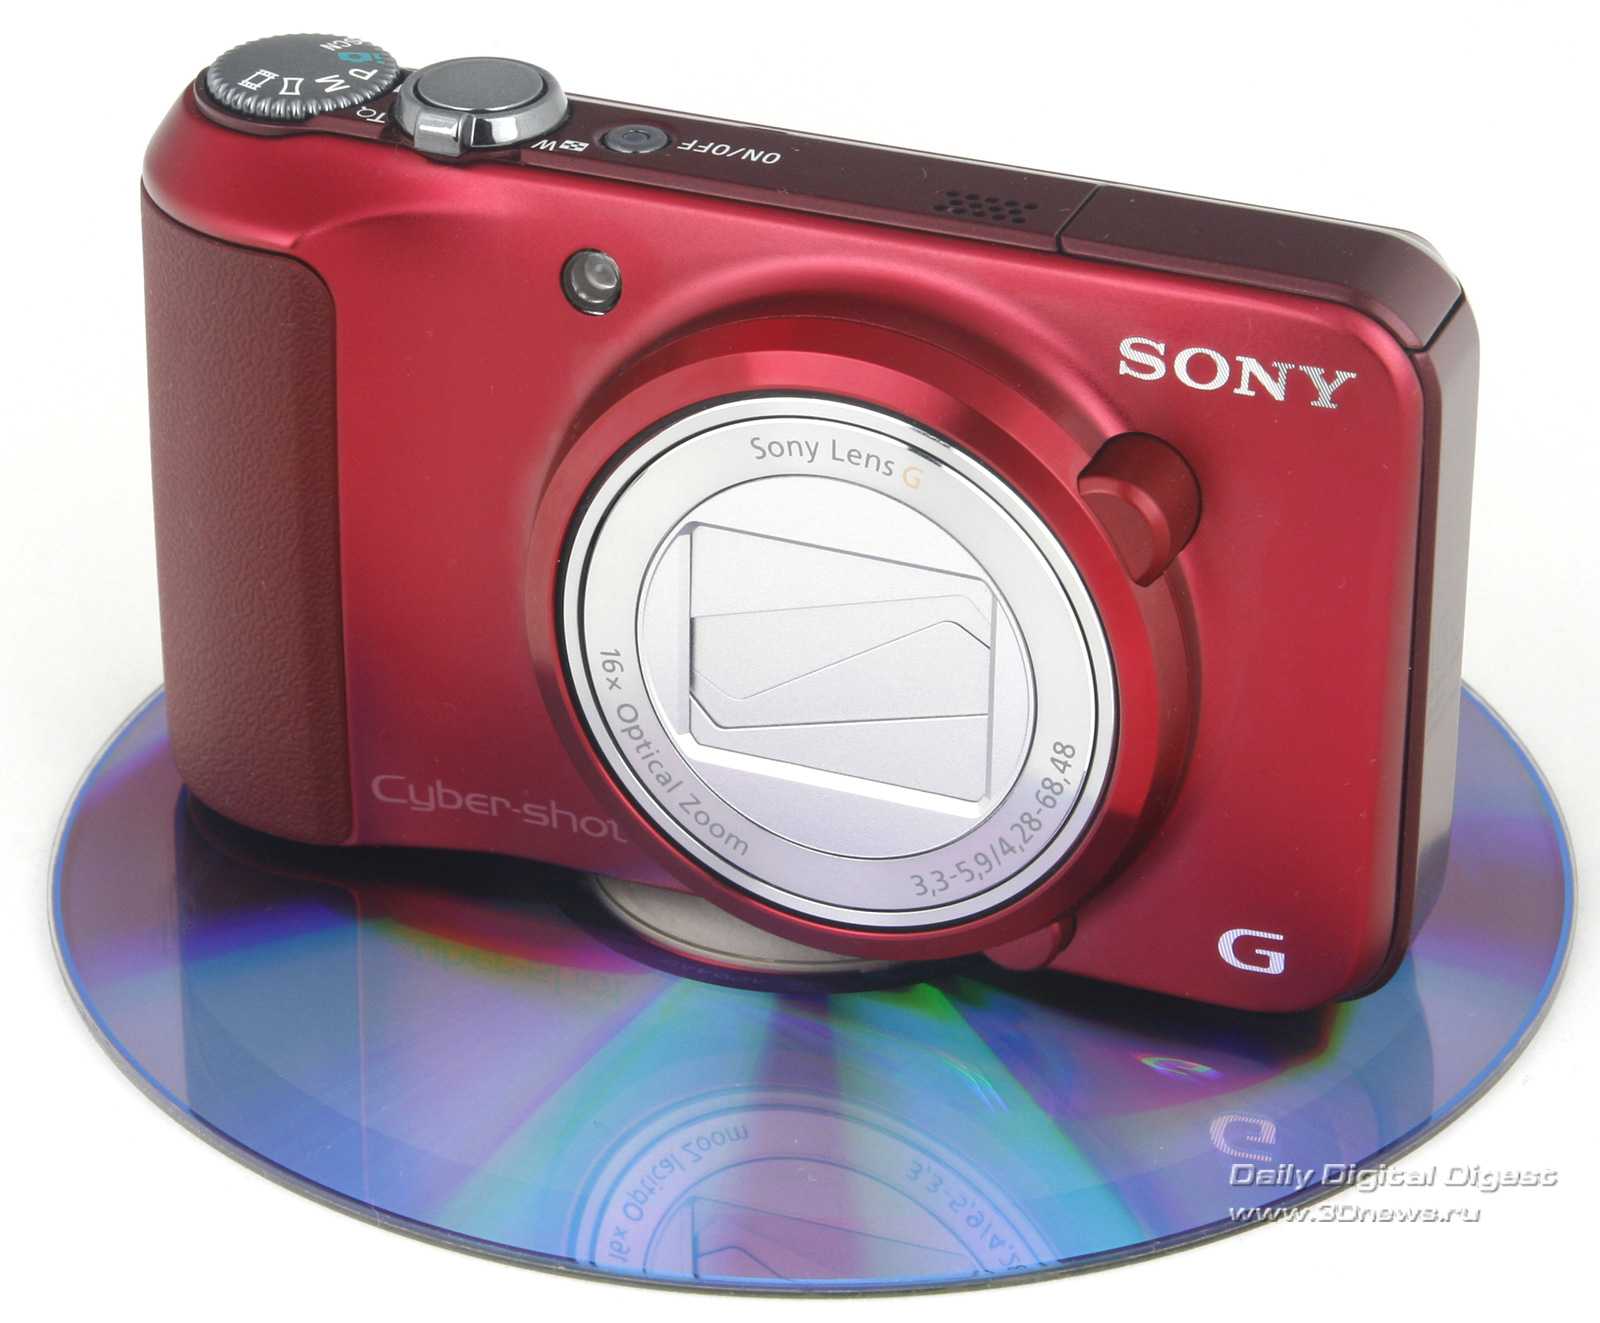 Фотоаппарат sony cyber-shot dsc-h3 — купить, цена и характеристики, отзывы